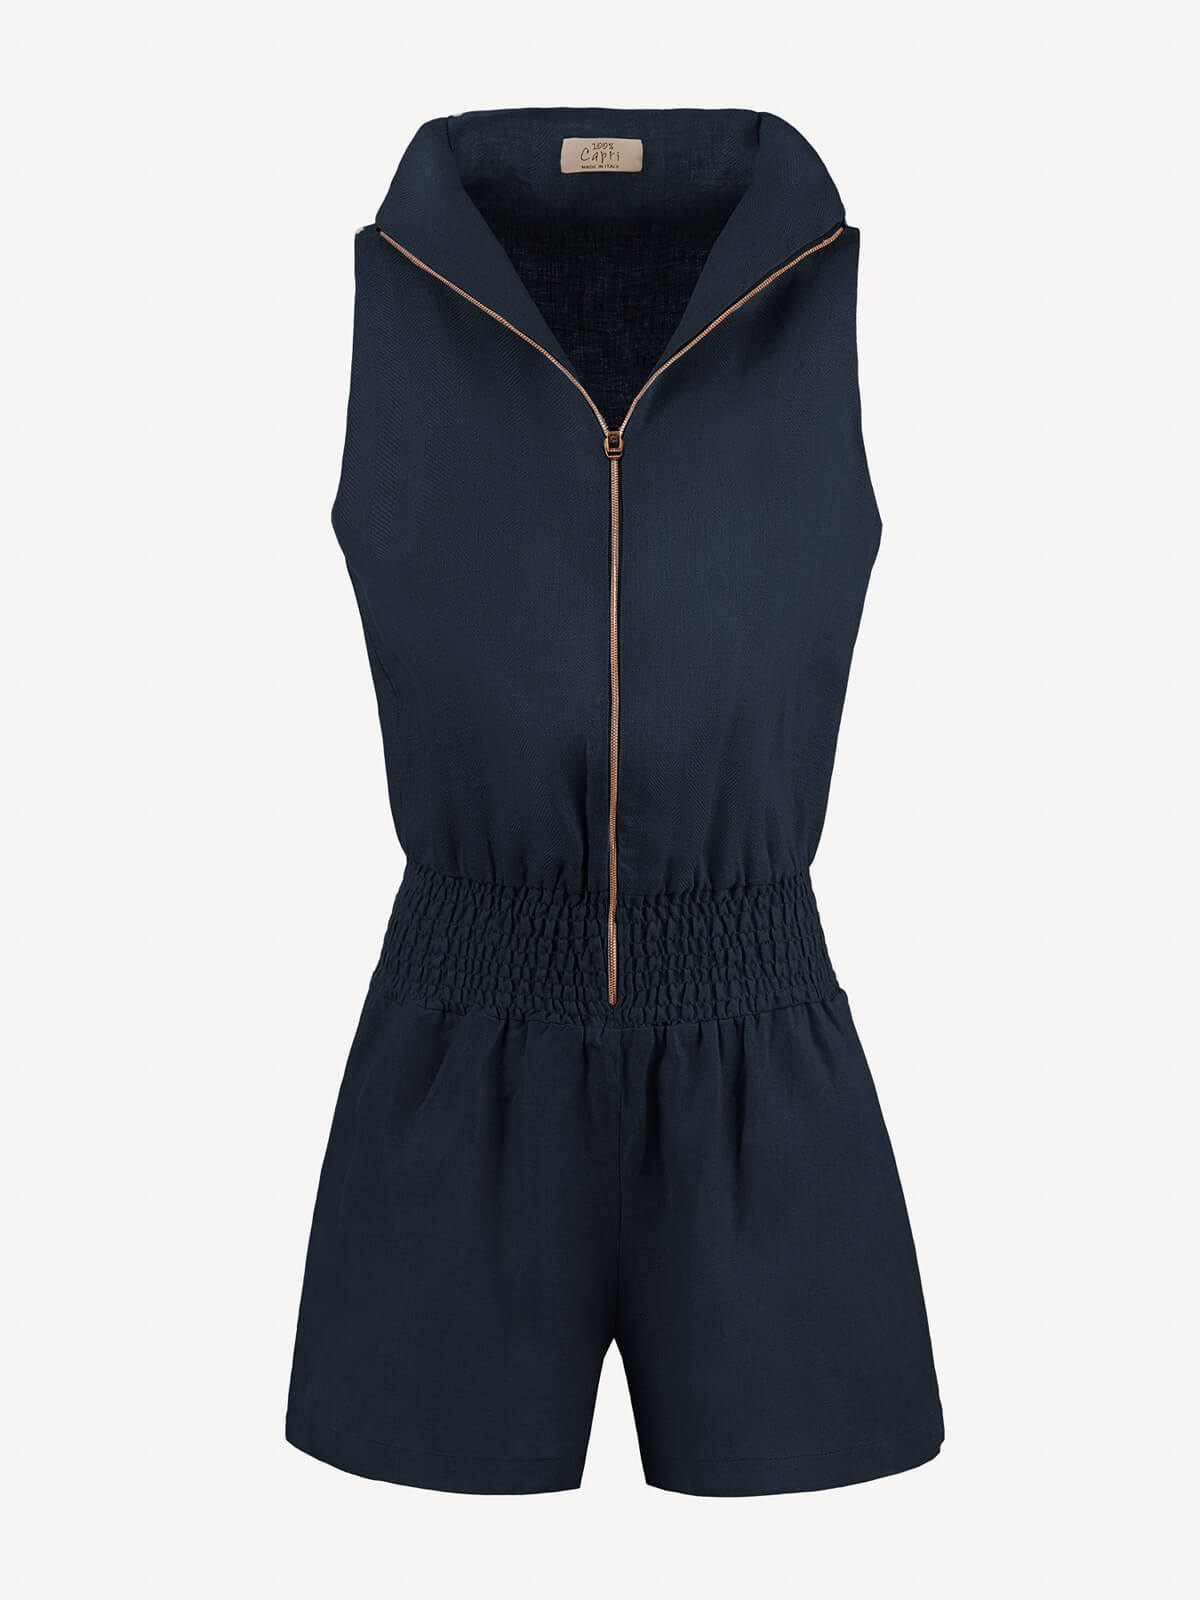 Tuta Zip  for woman 100% Capri blue linen jumpsuit front